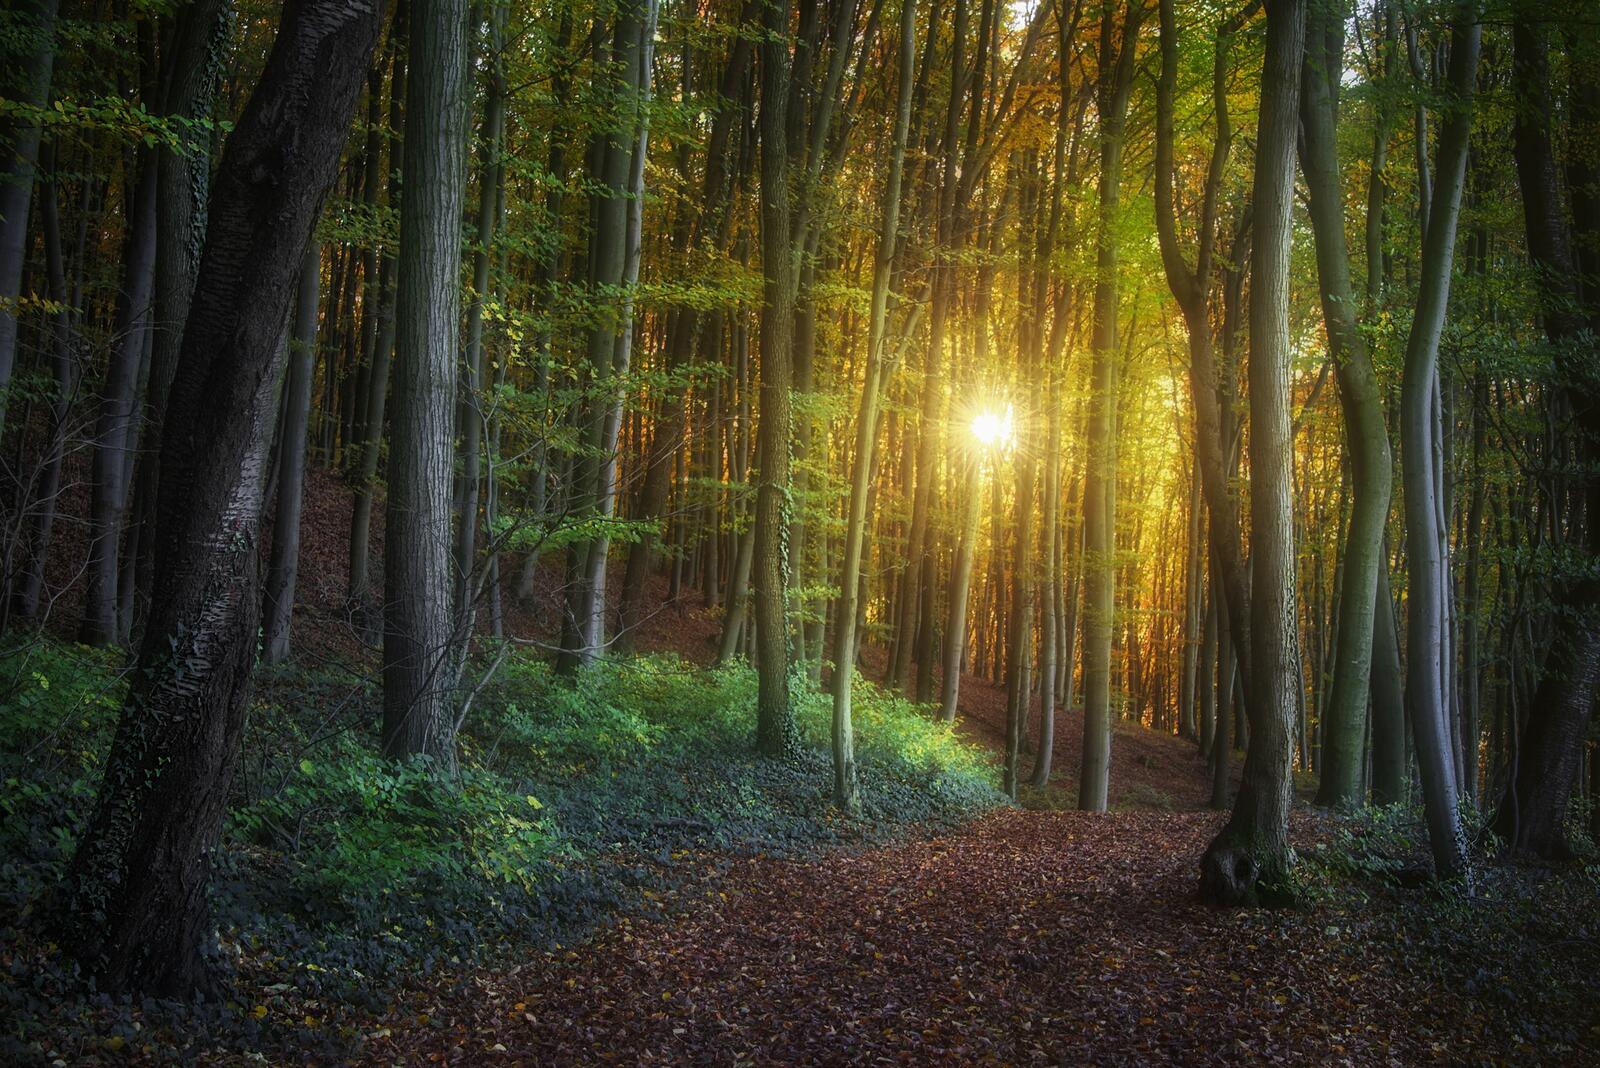 Бесплатное фото Картинки на заставку лес, деревья, лучи солнца бесплатно